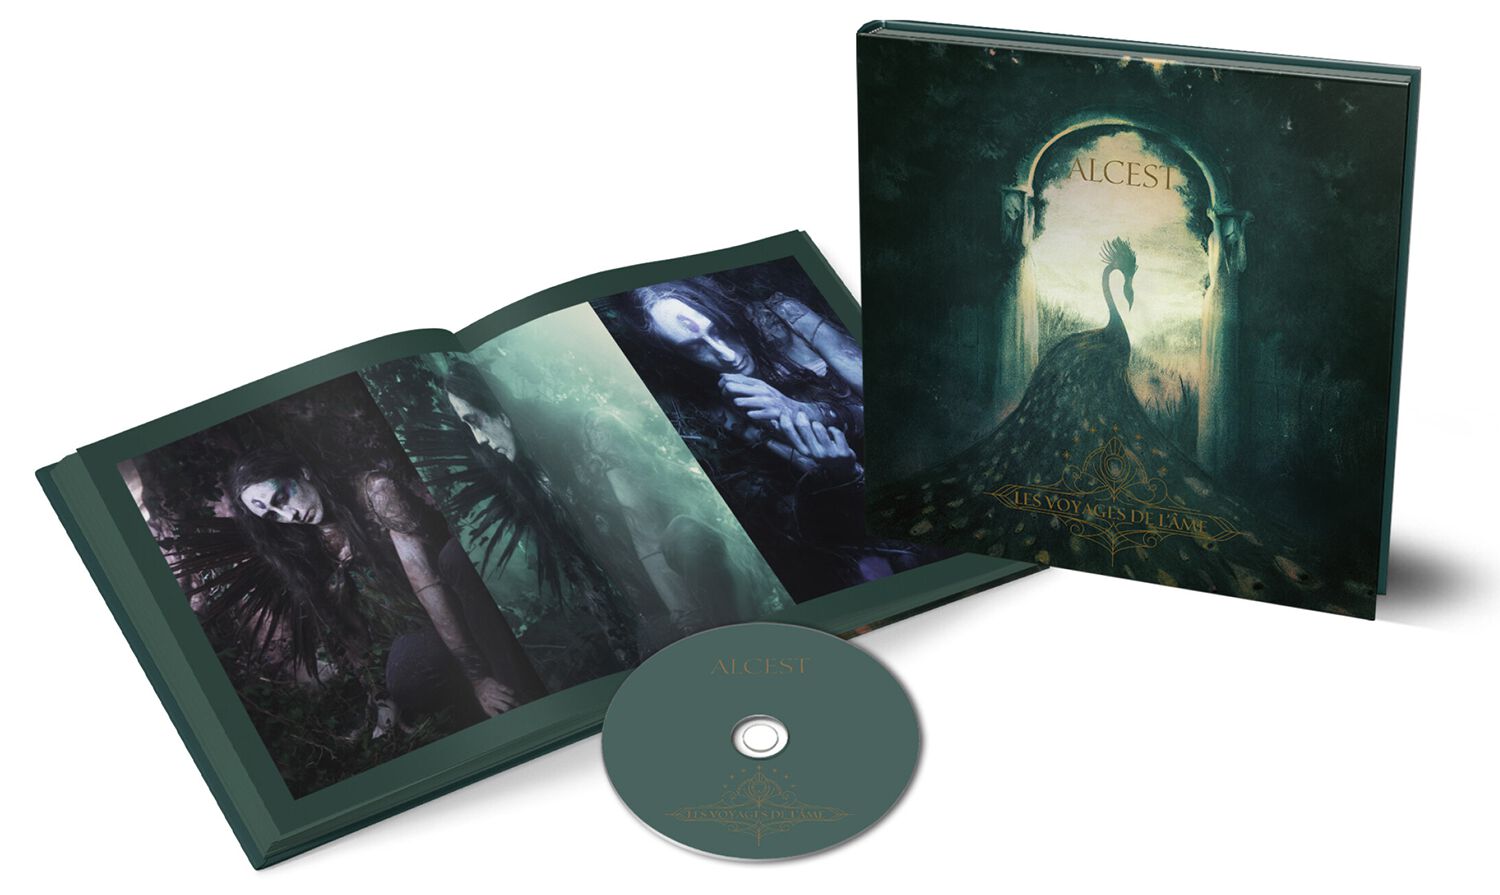 Les voyages de l'ame (10th Anniversary Edition) CD von Alcest